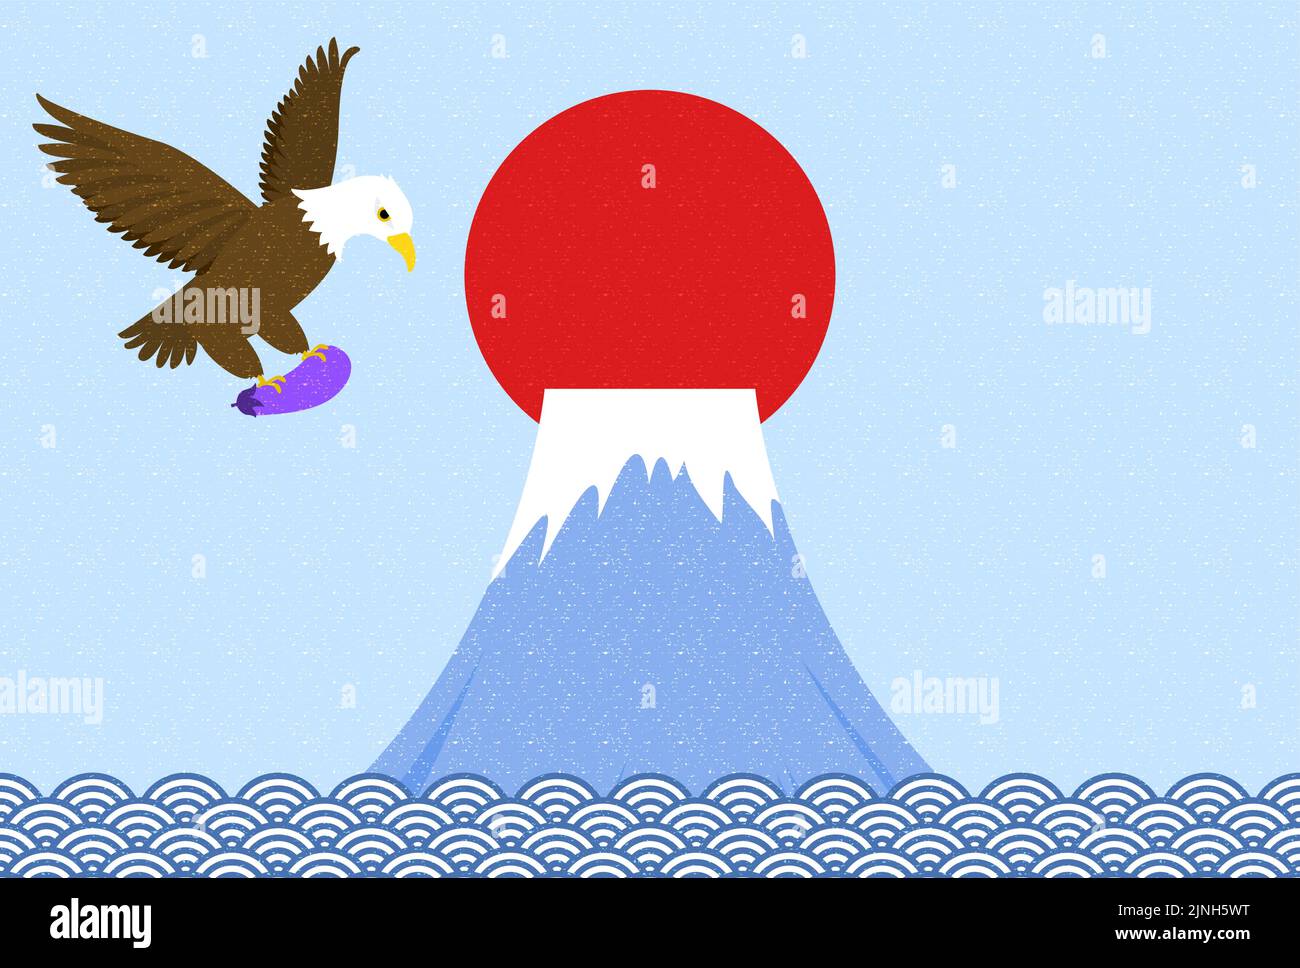 Ilustración de una tarjeta de Año Nuevo en la que un halcón agarra berenjena y vuela sobre el telón de fondo del Monte Fuji Ilustración del Vector